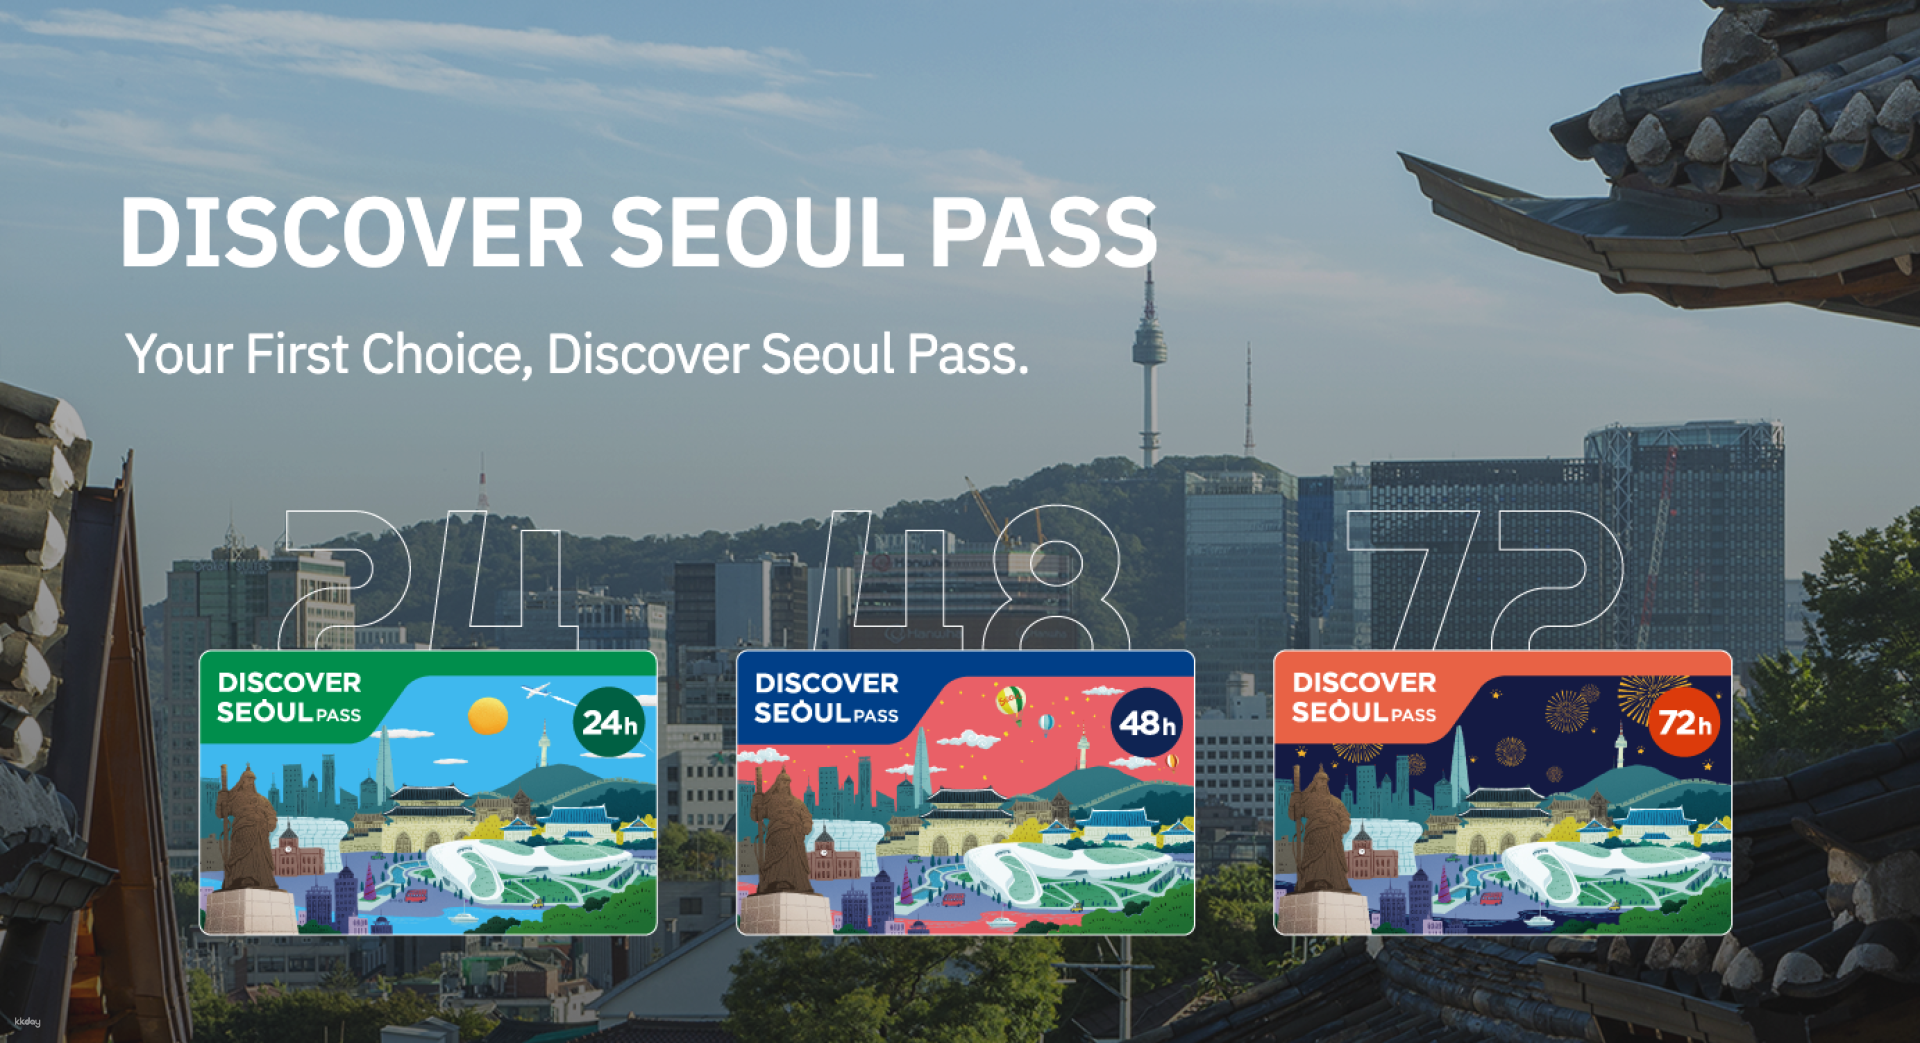 韓國-首爾轉轉卡 Discover Seoul Pass (Card version) | 一卡暢遊韓國首爾